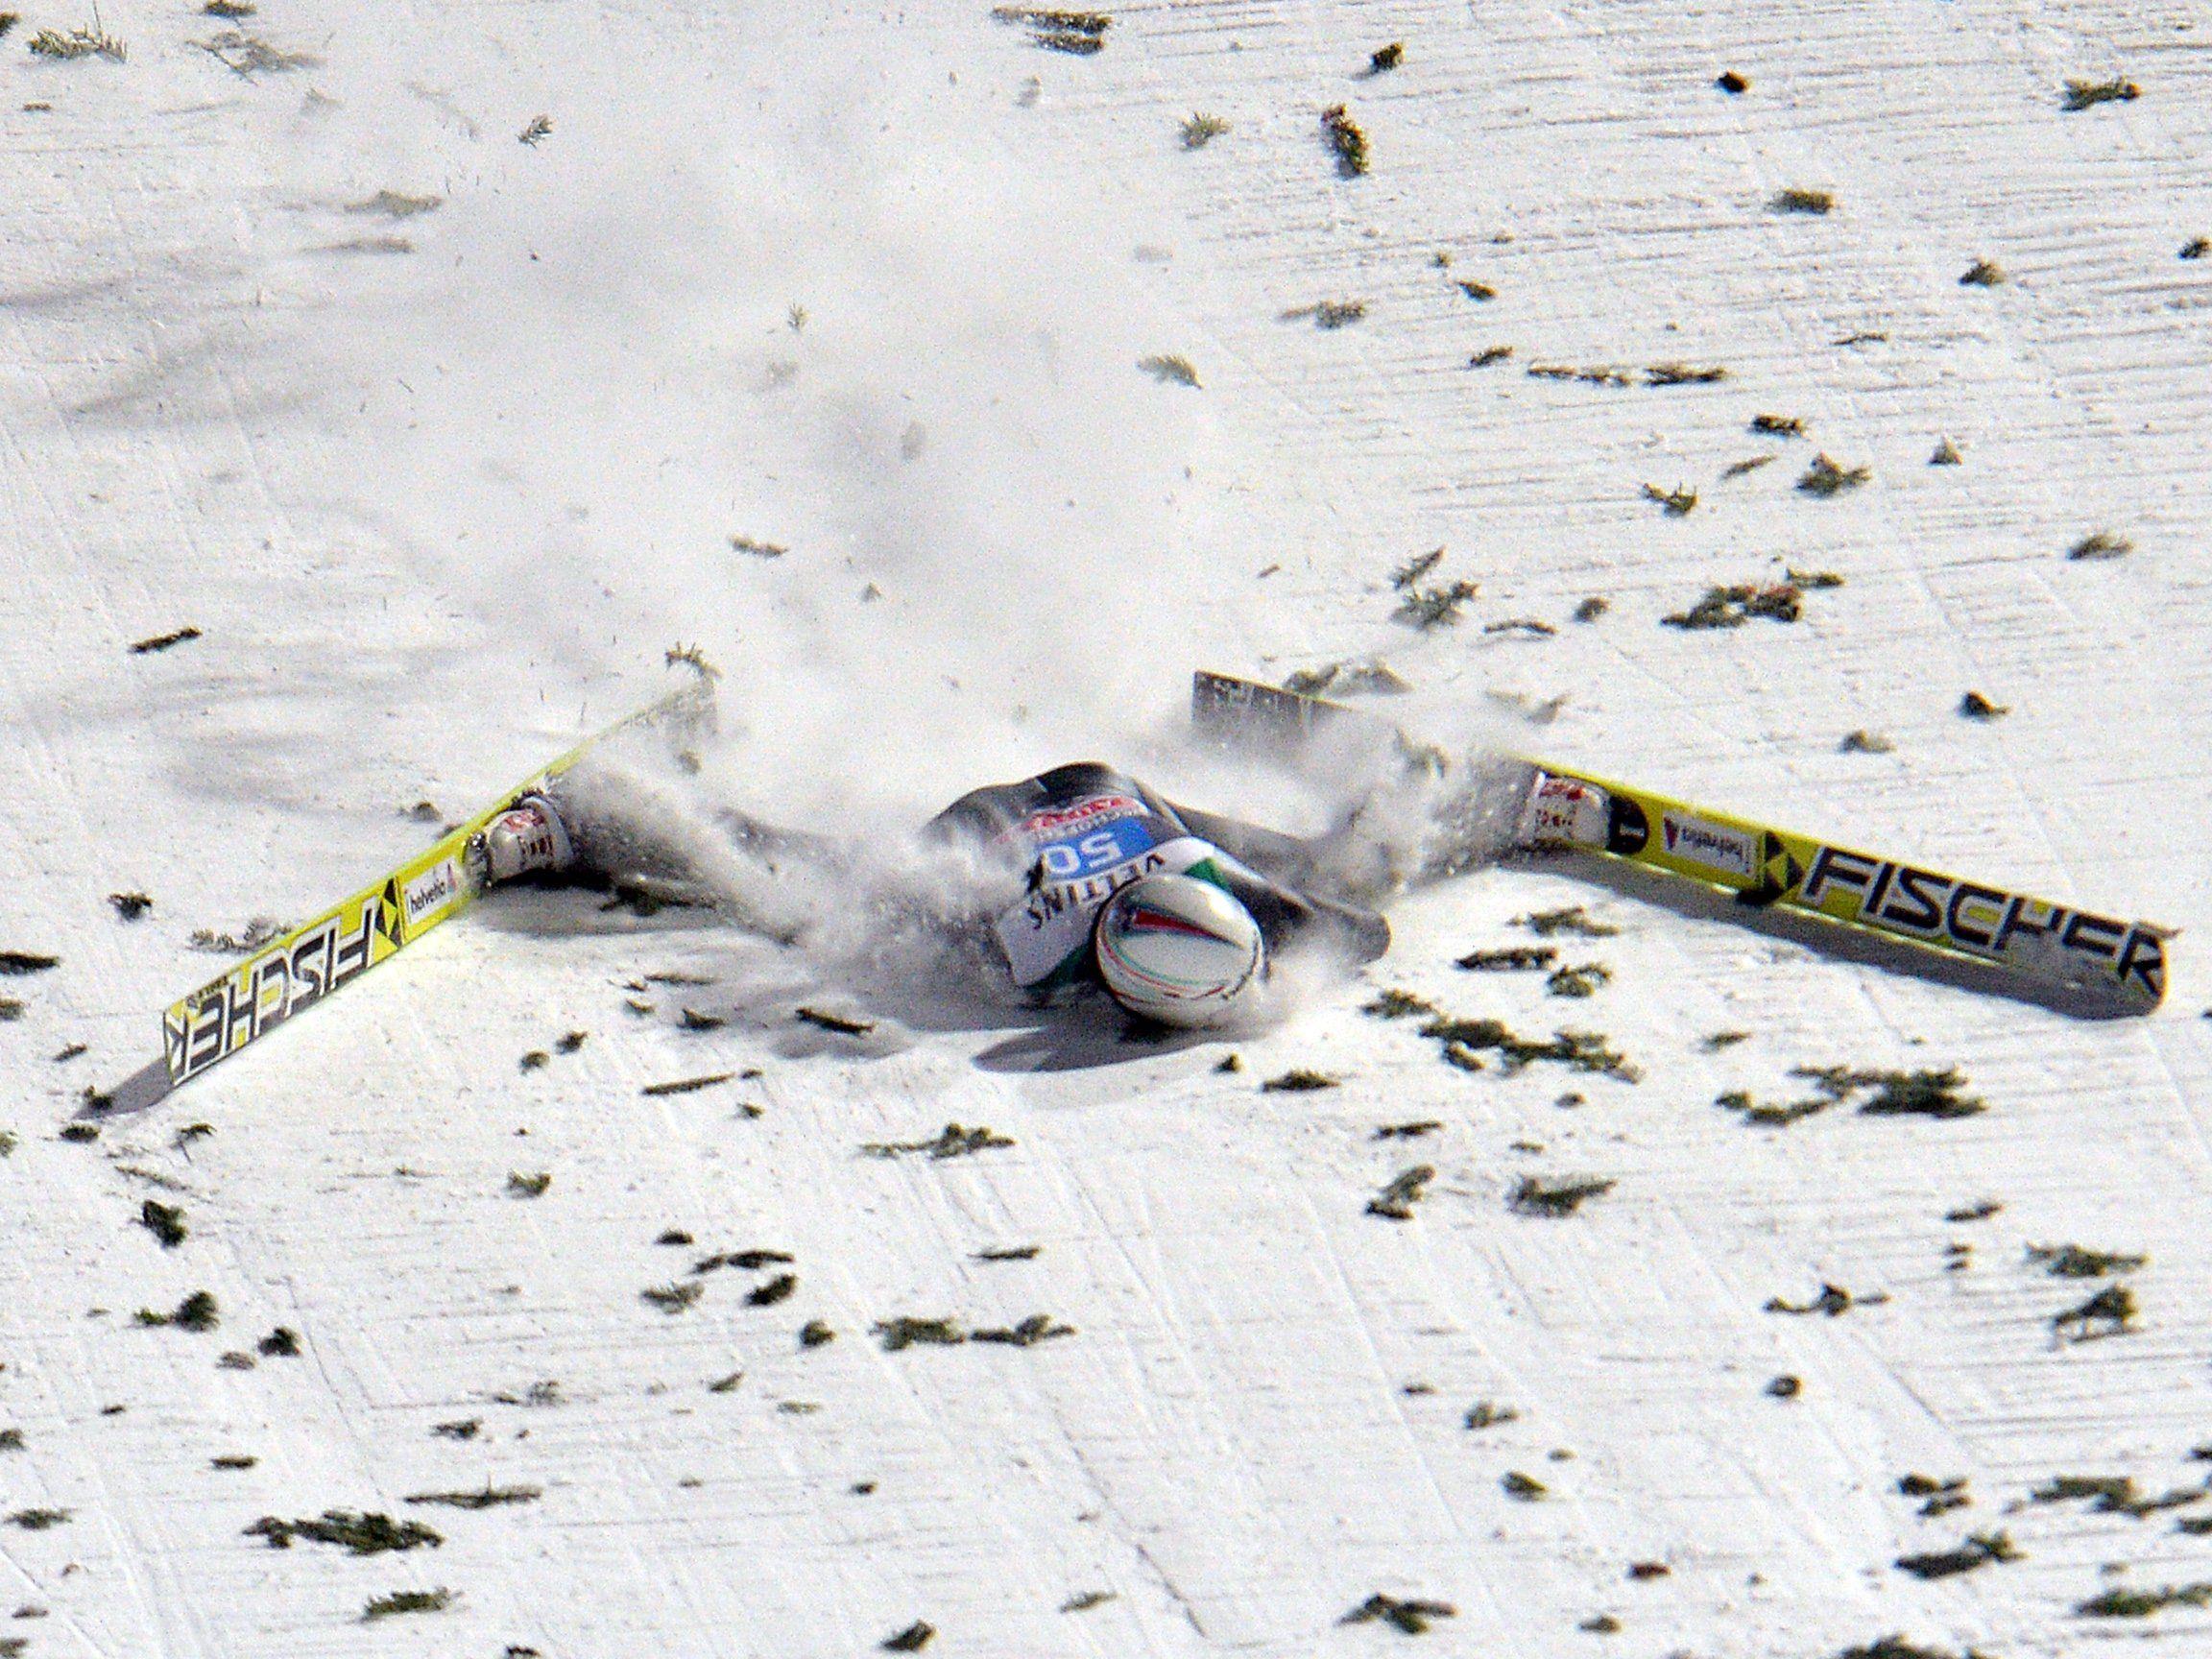 Der 33-jährige Schweizer verlor am Dienstag nach der Landung bei 136 Metern auf der Schanze in Bischofshofen die Kontrolle über seine Ski.